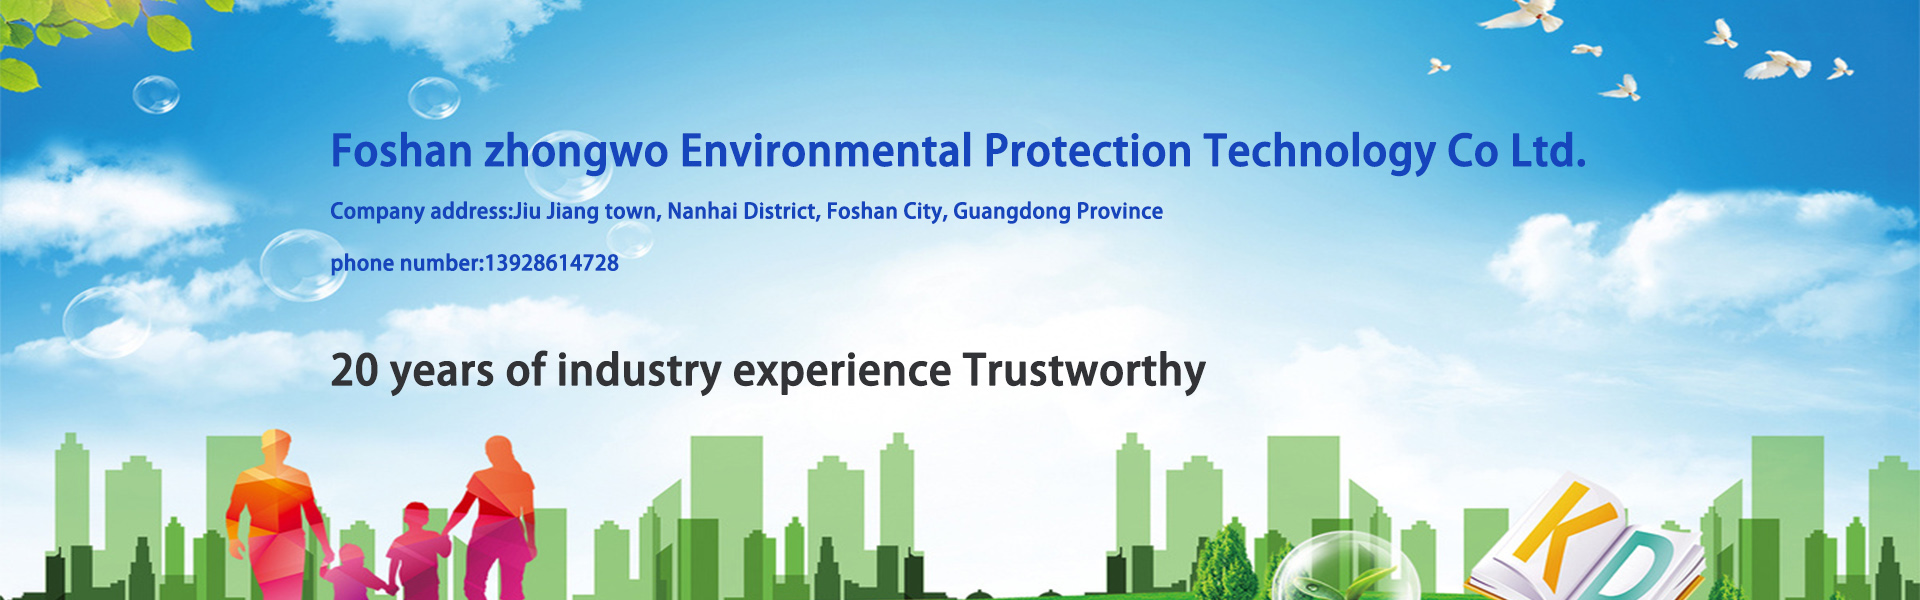 Wasseraufbereitungsanlagen, Wasseraufbereitungsanlagen, Umweltschutzanlagen,Foshan zhongwo Environmental Protection Technology Co Ltd.